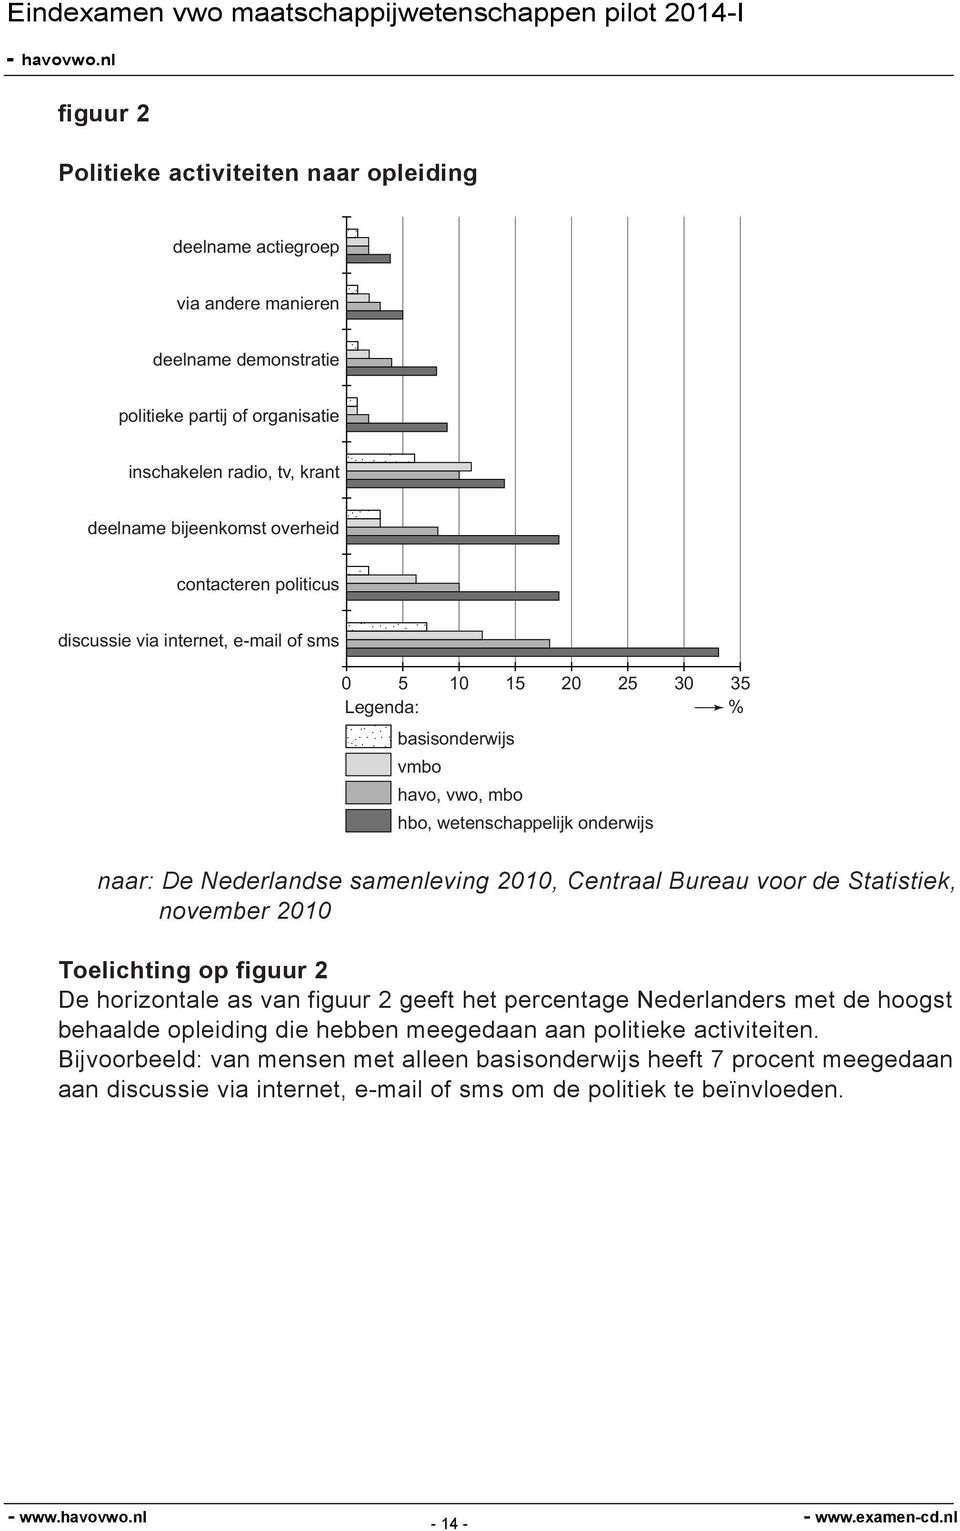 samenleving 2010, Centraal Bureau voor de Statistiek, november 2010 Toelichting op figuur 2 De horizontale as van figuur 2 geeft het percentage Nederlanders met de hoogst behaalde opleiding die